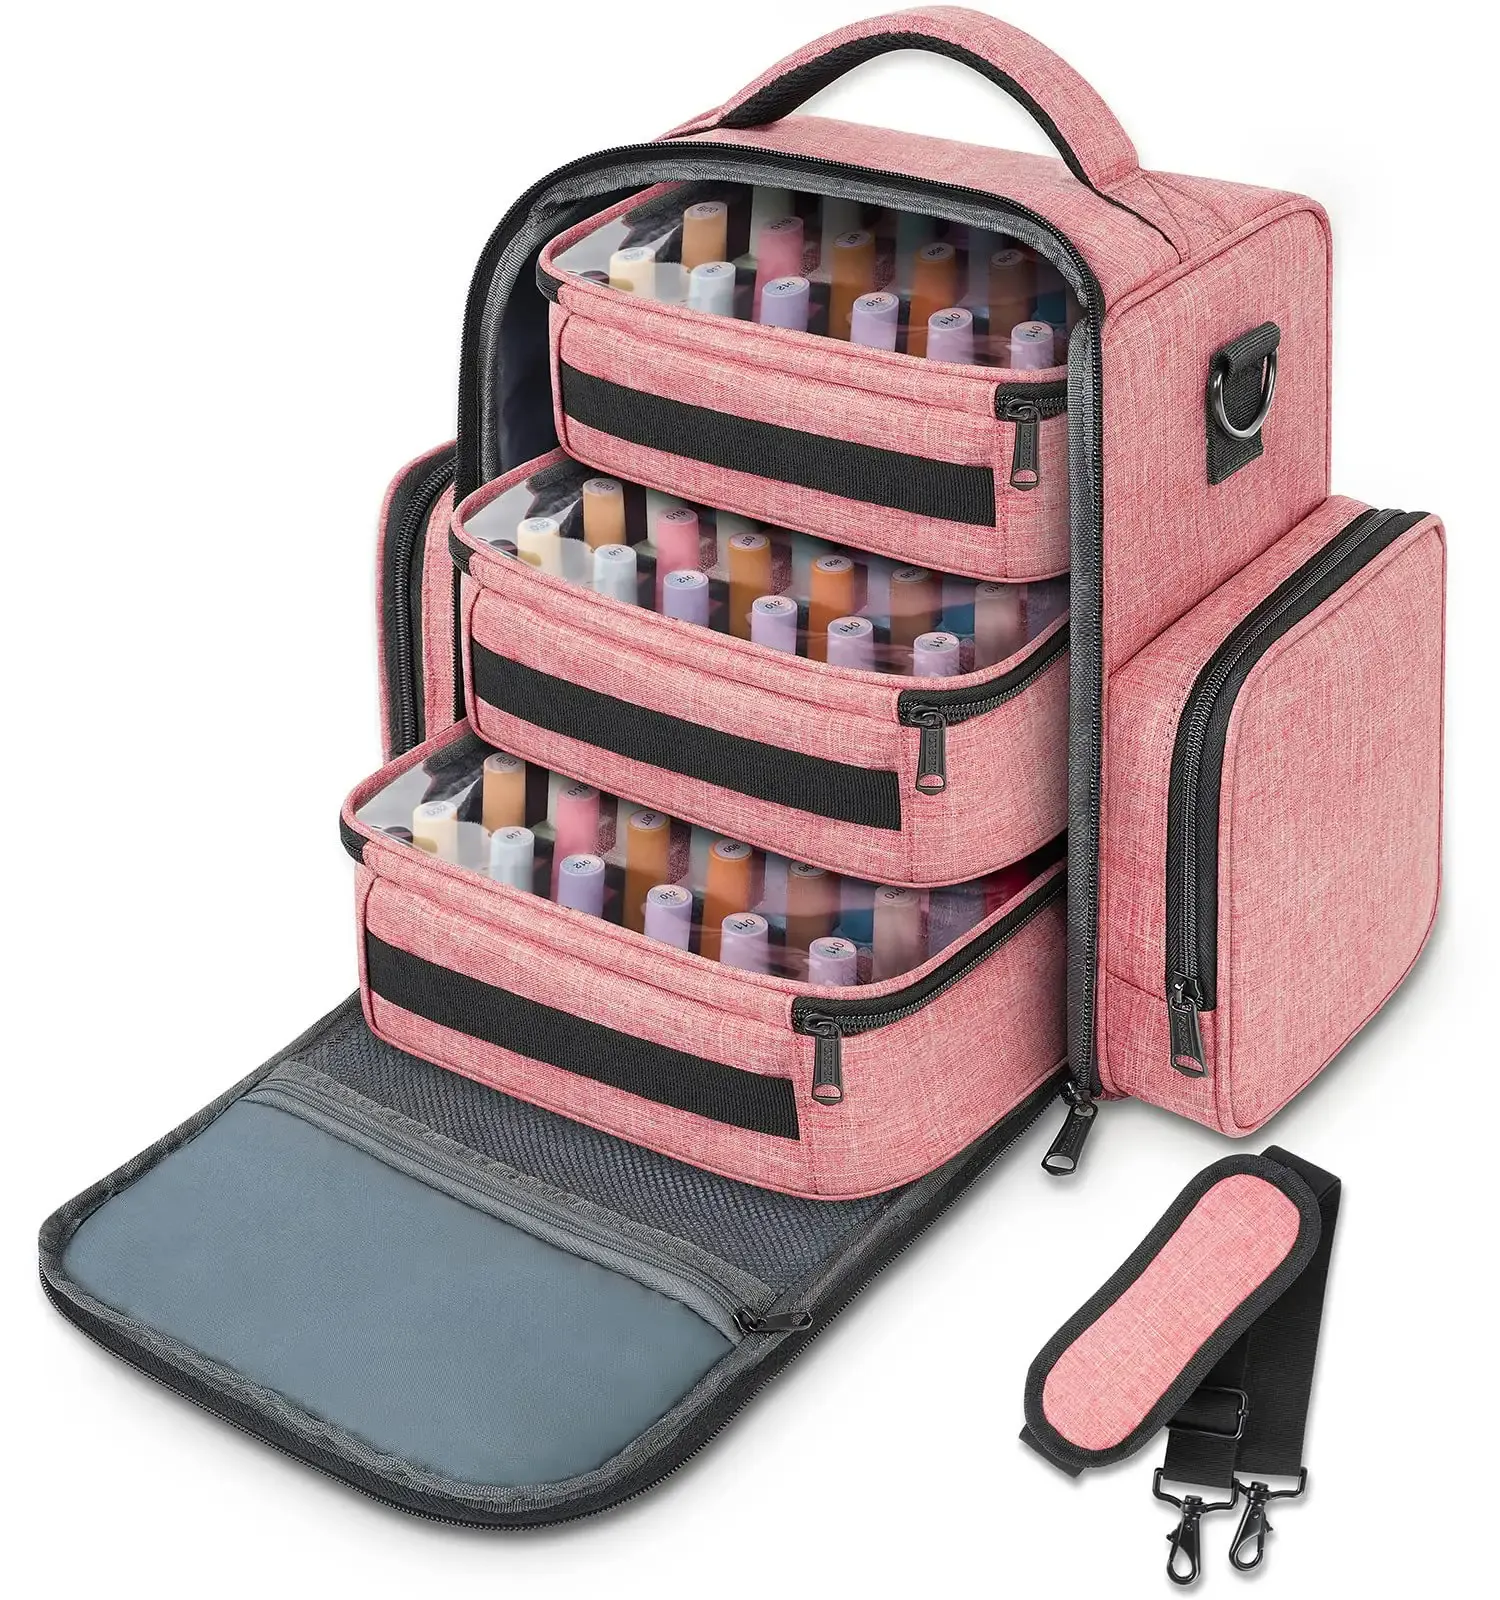 Diseño personalizado de fábrica, organizador de esmalte de uñas de viaje, mochila, bolsa de almacenamiento de herramientas, capacidad para 72 botellas, bolsa de esmalte de uñas